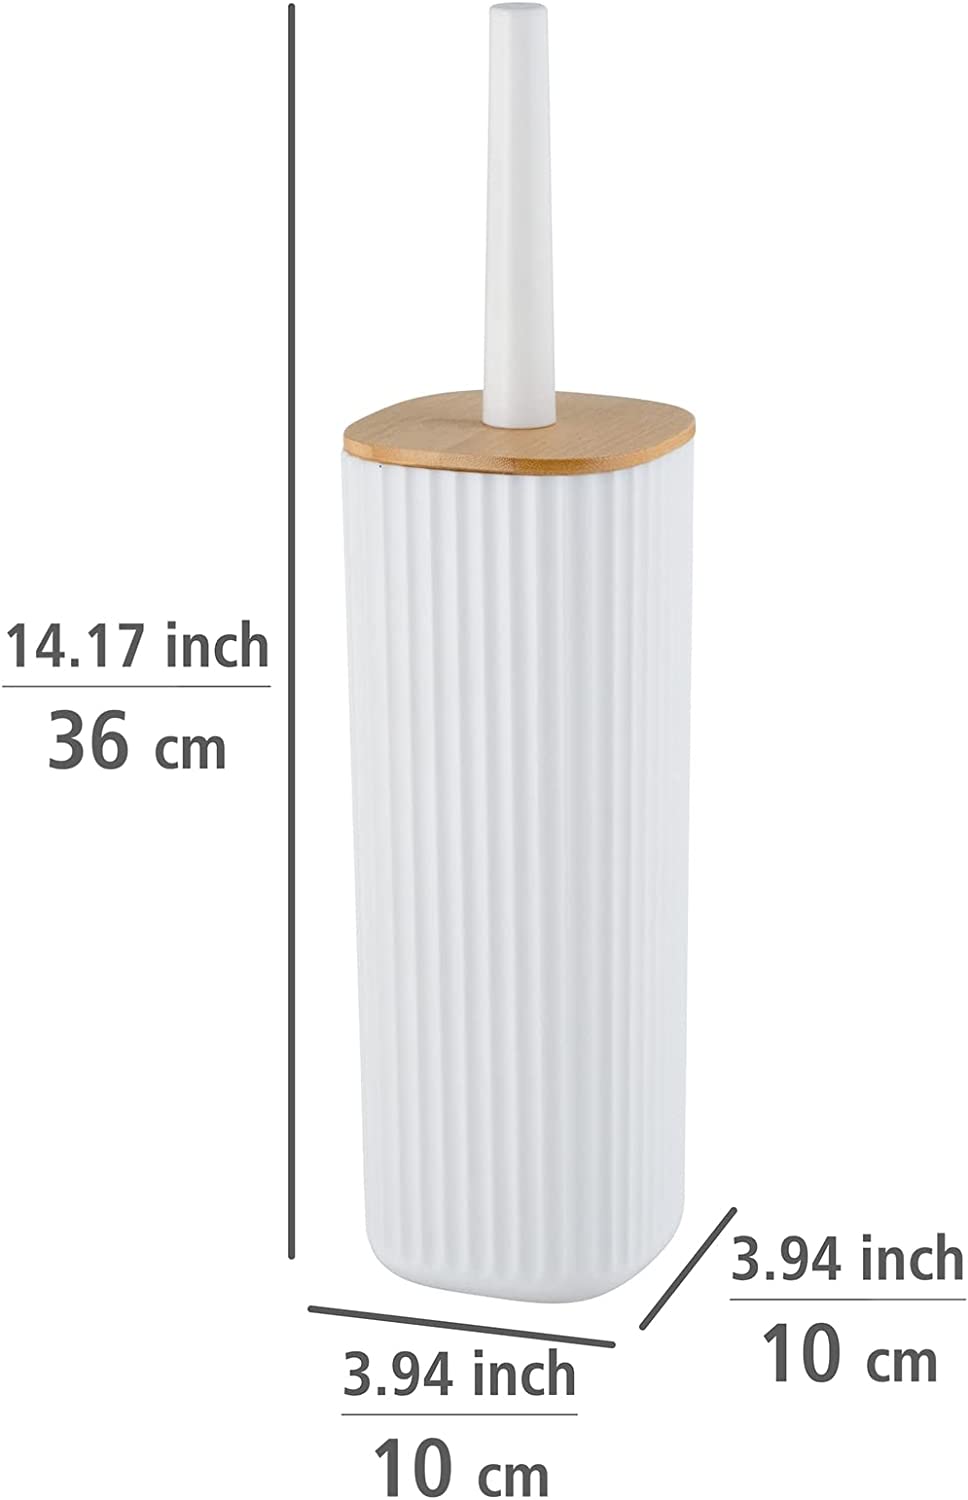 WC-Garnitur Rotello, geschlossener WC-Bürstenhalter aus hochwertigem Kunststoff mit Bambus-Deckel und Rillenstruktur, Ø 10 x 36 cm, inklusive WC-Bürste, Bürstenkopf auswechselbar, Weiß/Natur